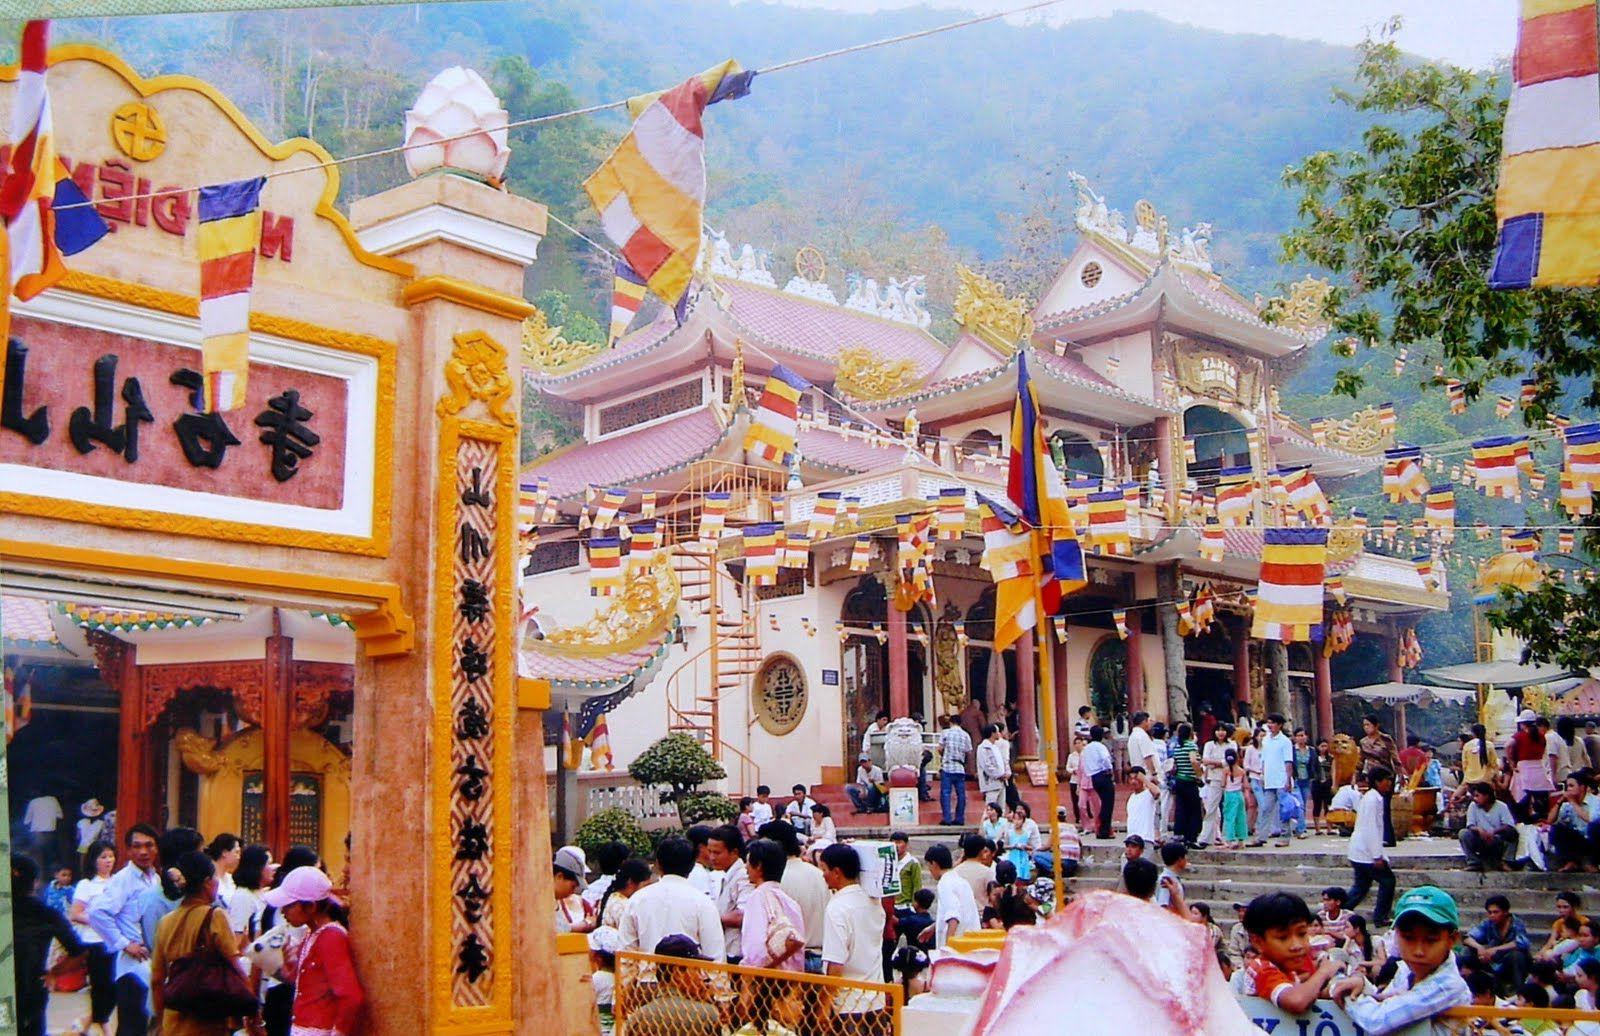 Hơn 1,3 triệu khách đã đến Tây Ninh trong những ngày diễn ra “Lễ hội núi Bà Đen – 2010”